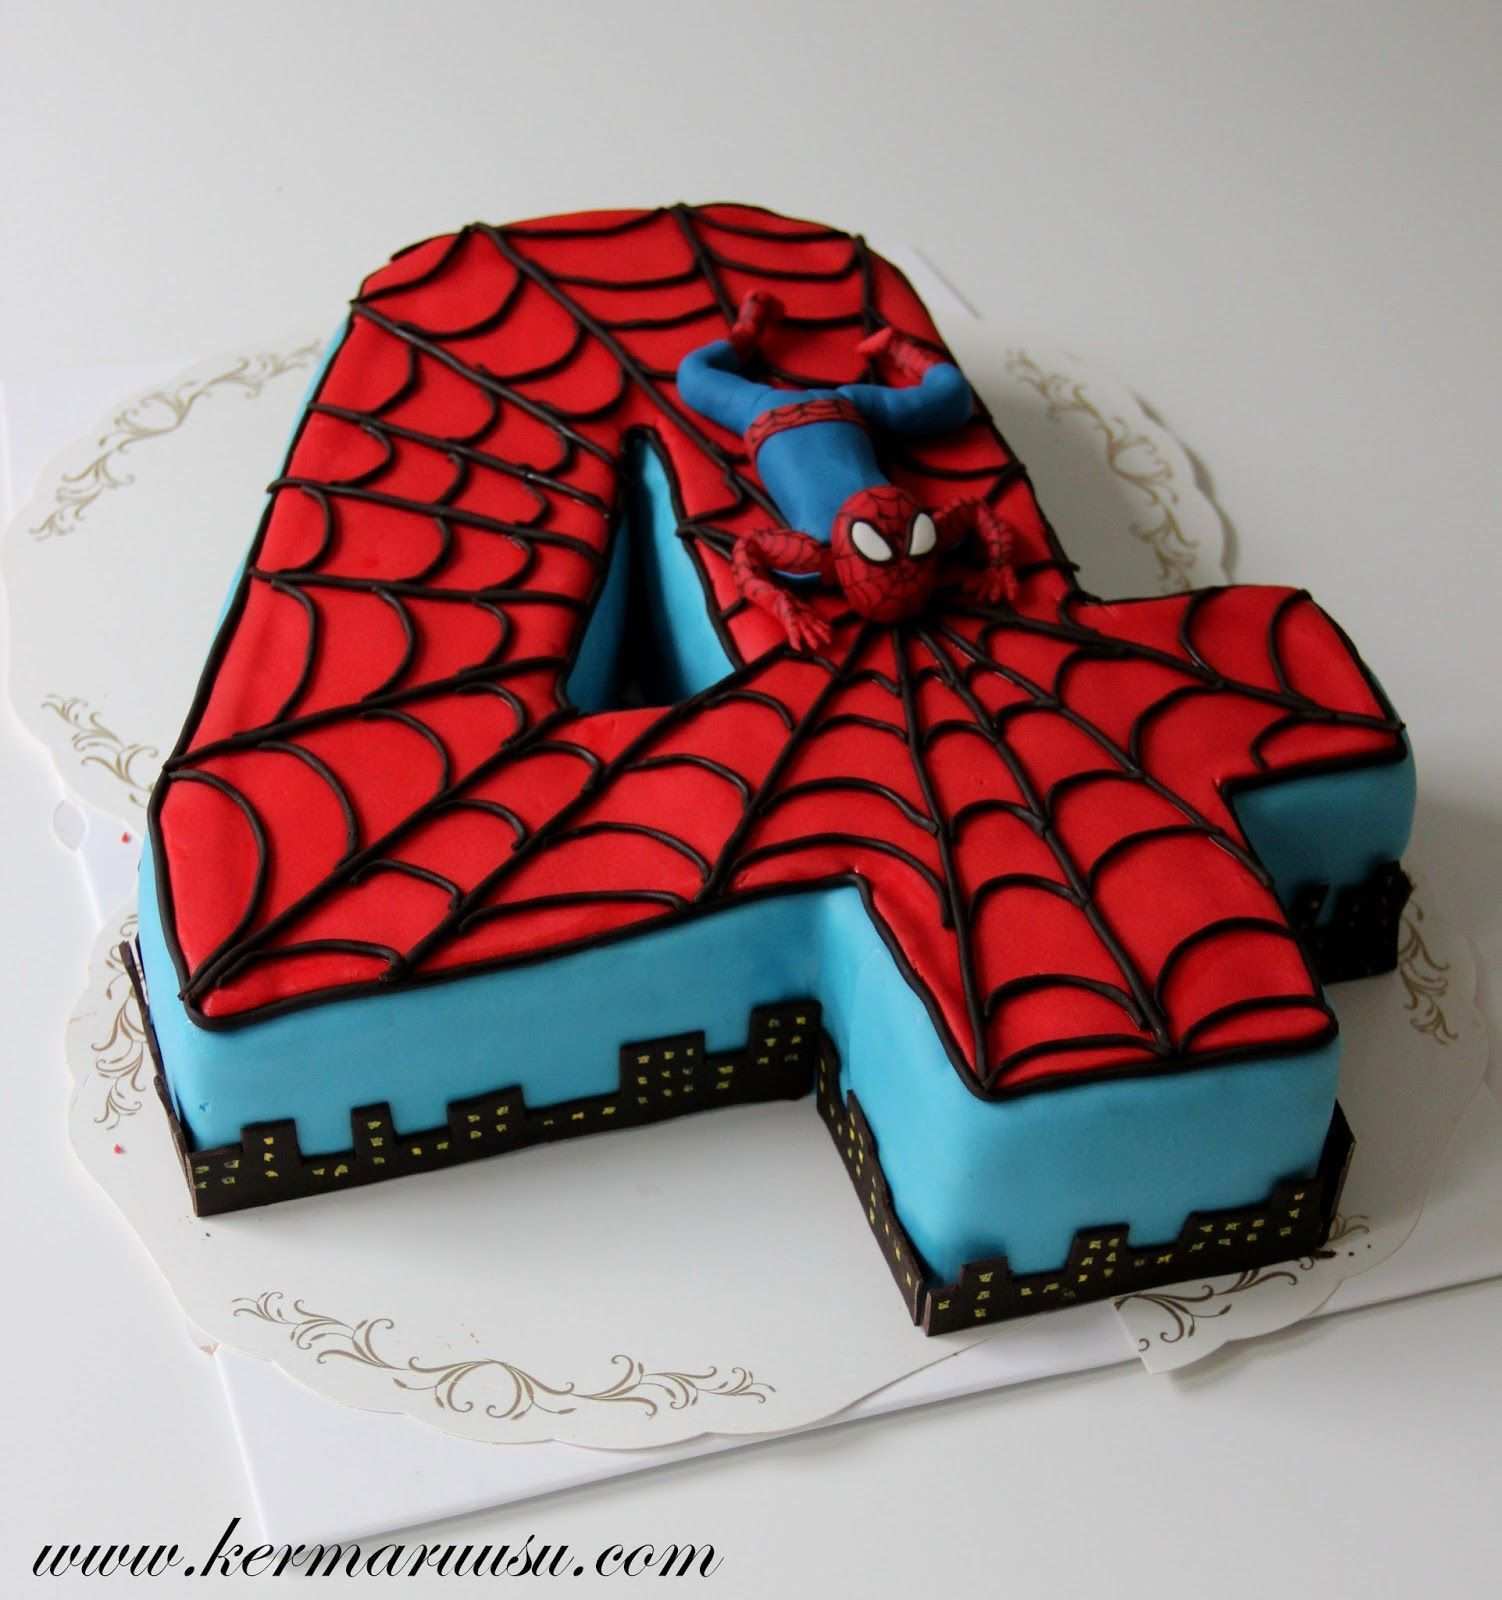 Spiderman Vorlage Fuer Torte